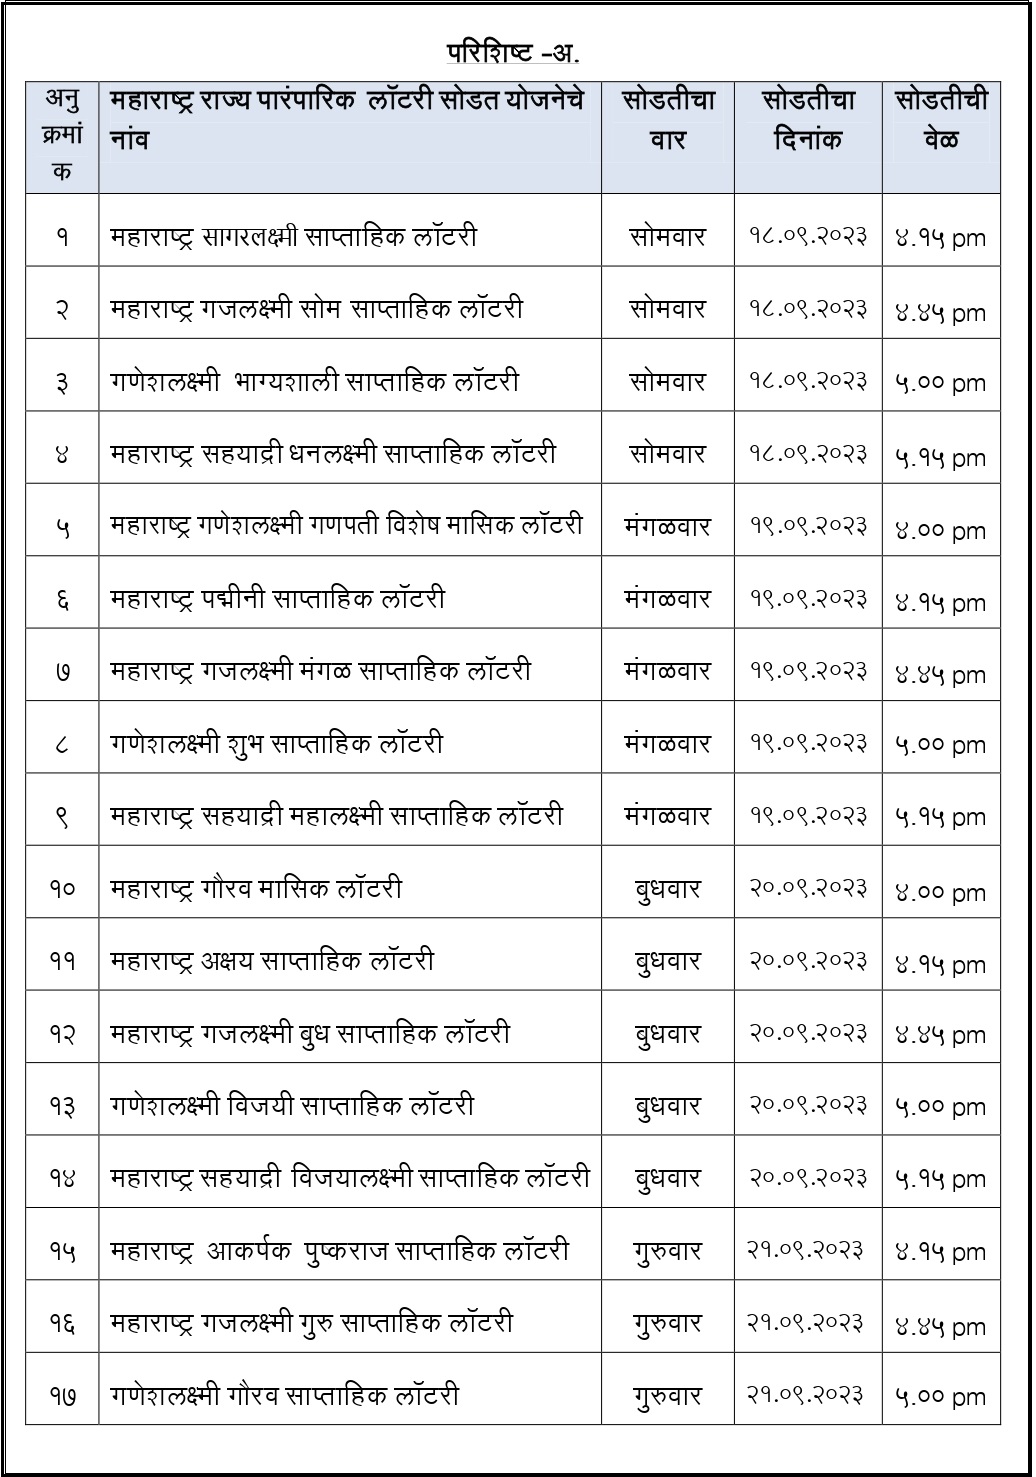 Maharashtra official lottery list-2